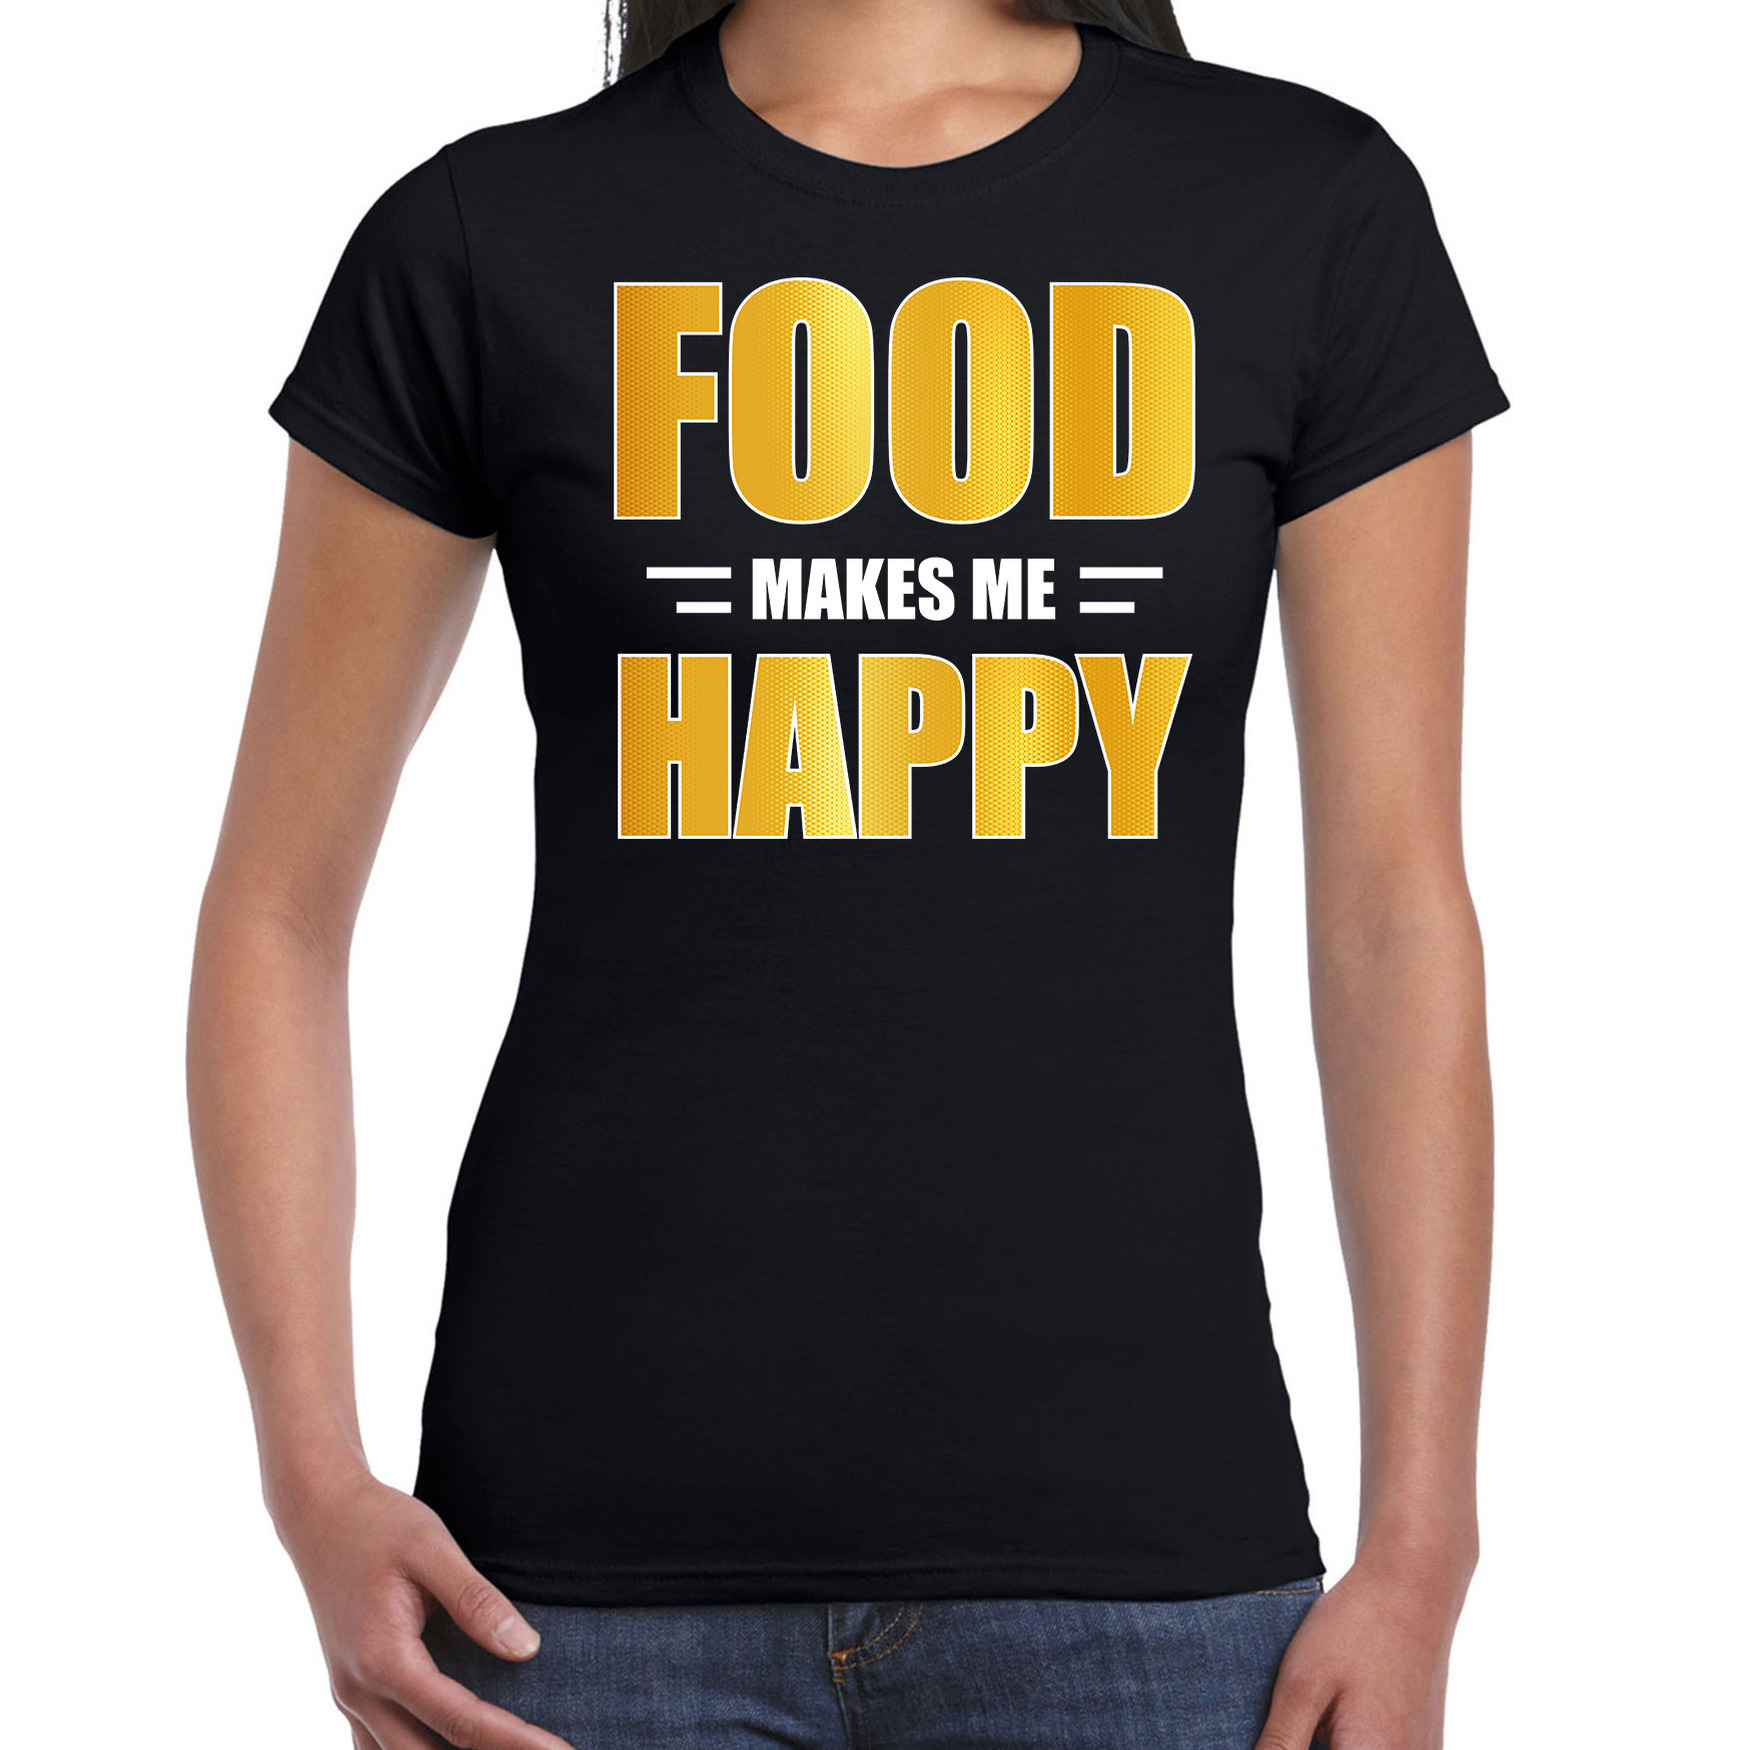 Food makes me happy t-shirt-kleding zwart voor dames